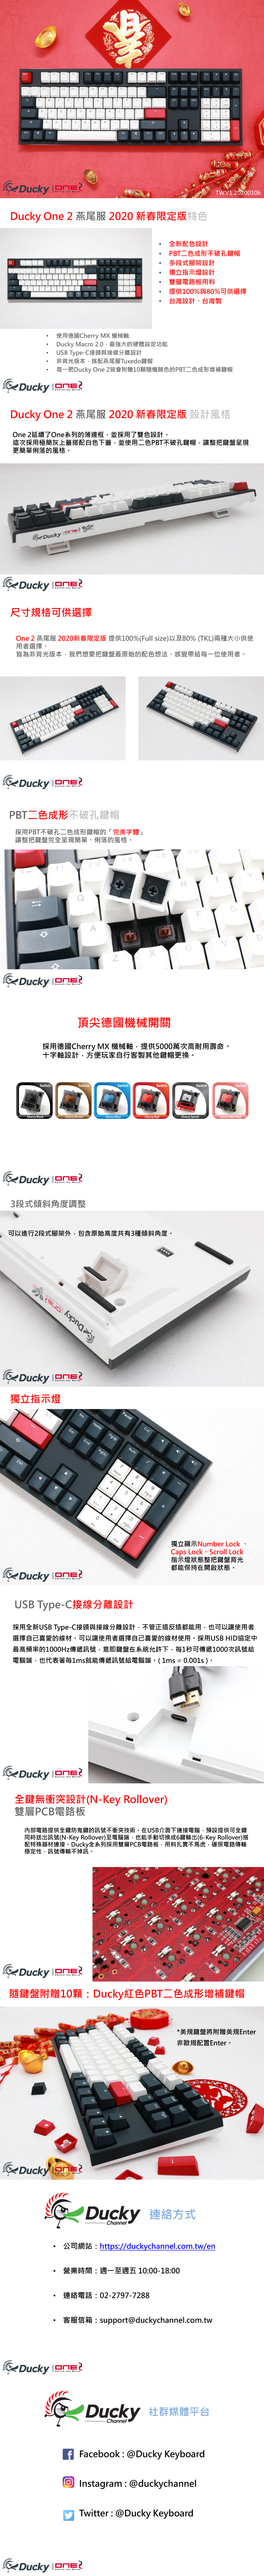 Ducky 創傑one 2 燕尾服銀軸pbt機械式鍵盤 中文版 Autobuy購物中心